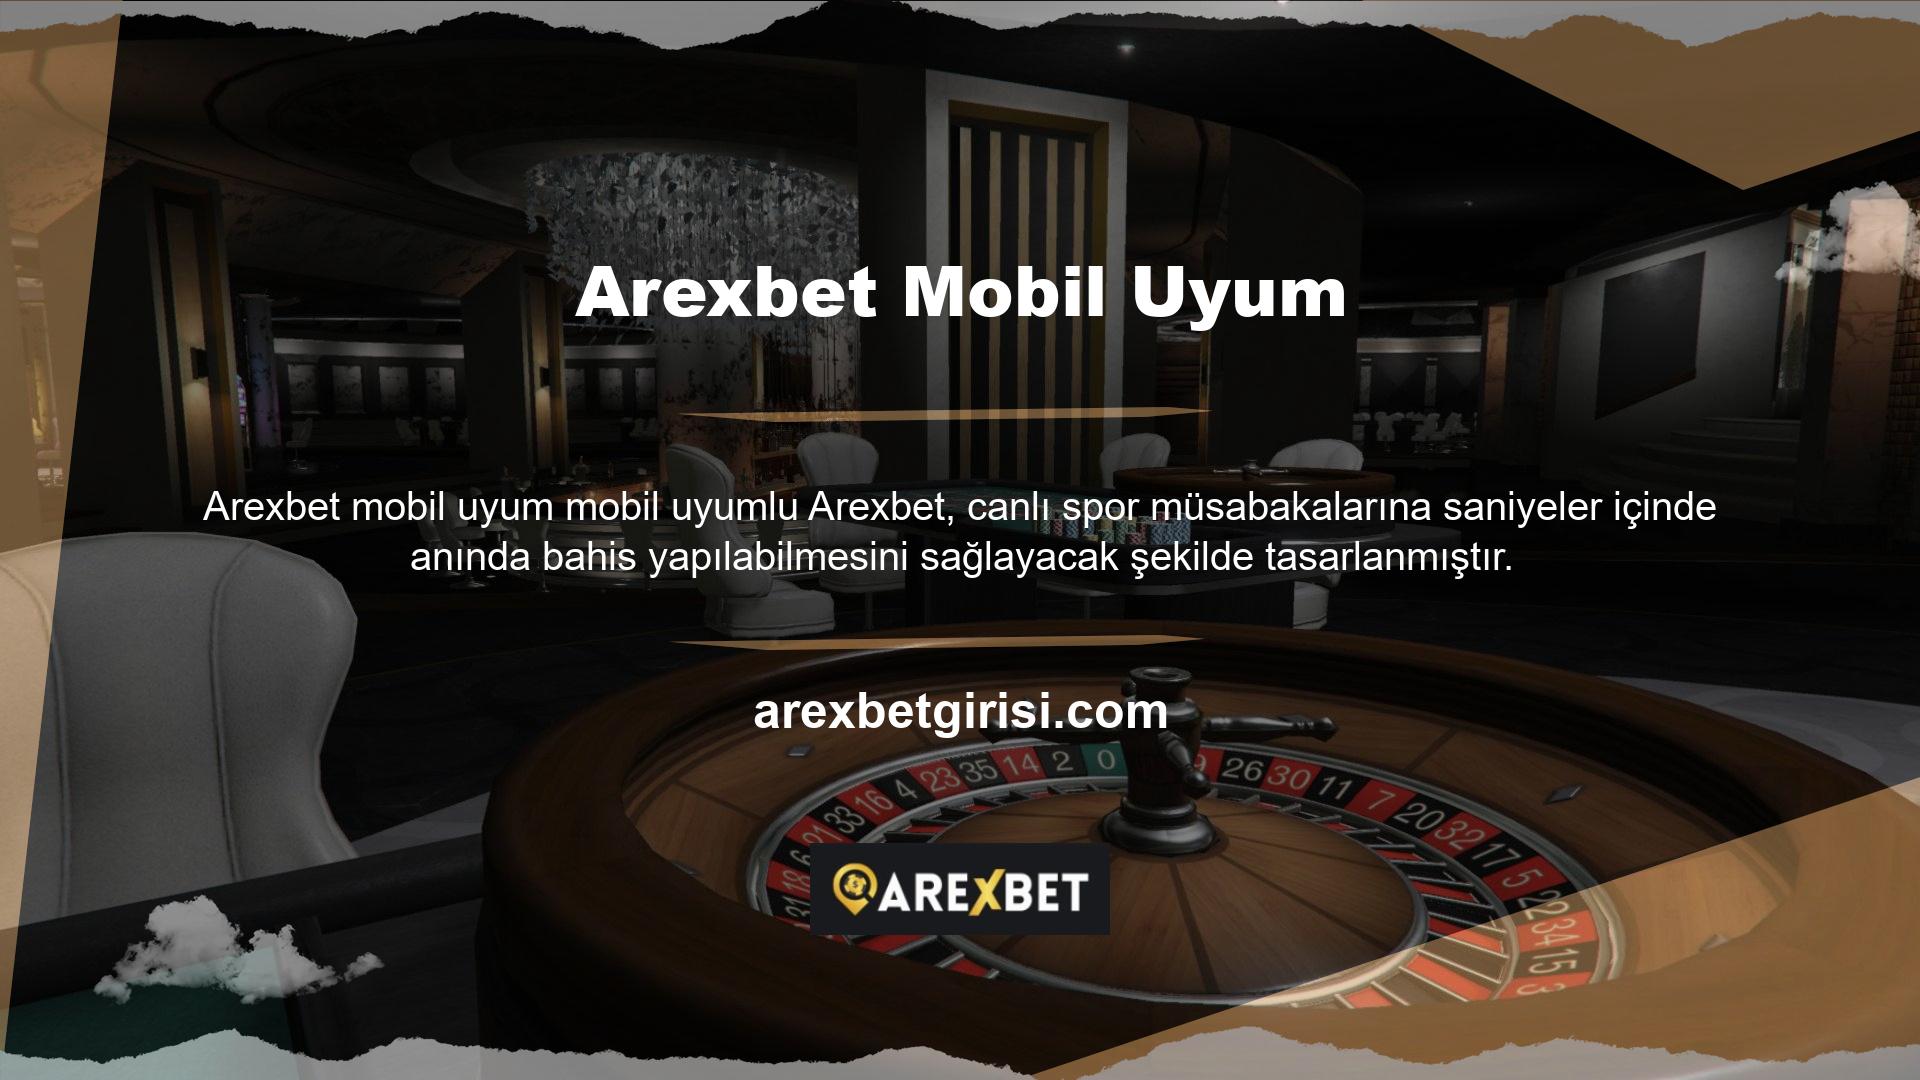 Ayrıca Arexbet mobil cihaz kullanıcıları en son teknoloji ve özelliklerle sürekli olarak güncellenmektedir